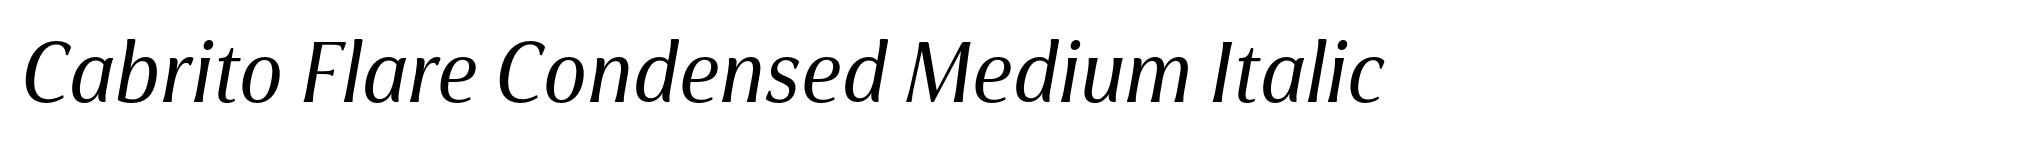 Cabrito Flare Condensed Medium Italic image